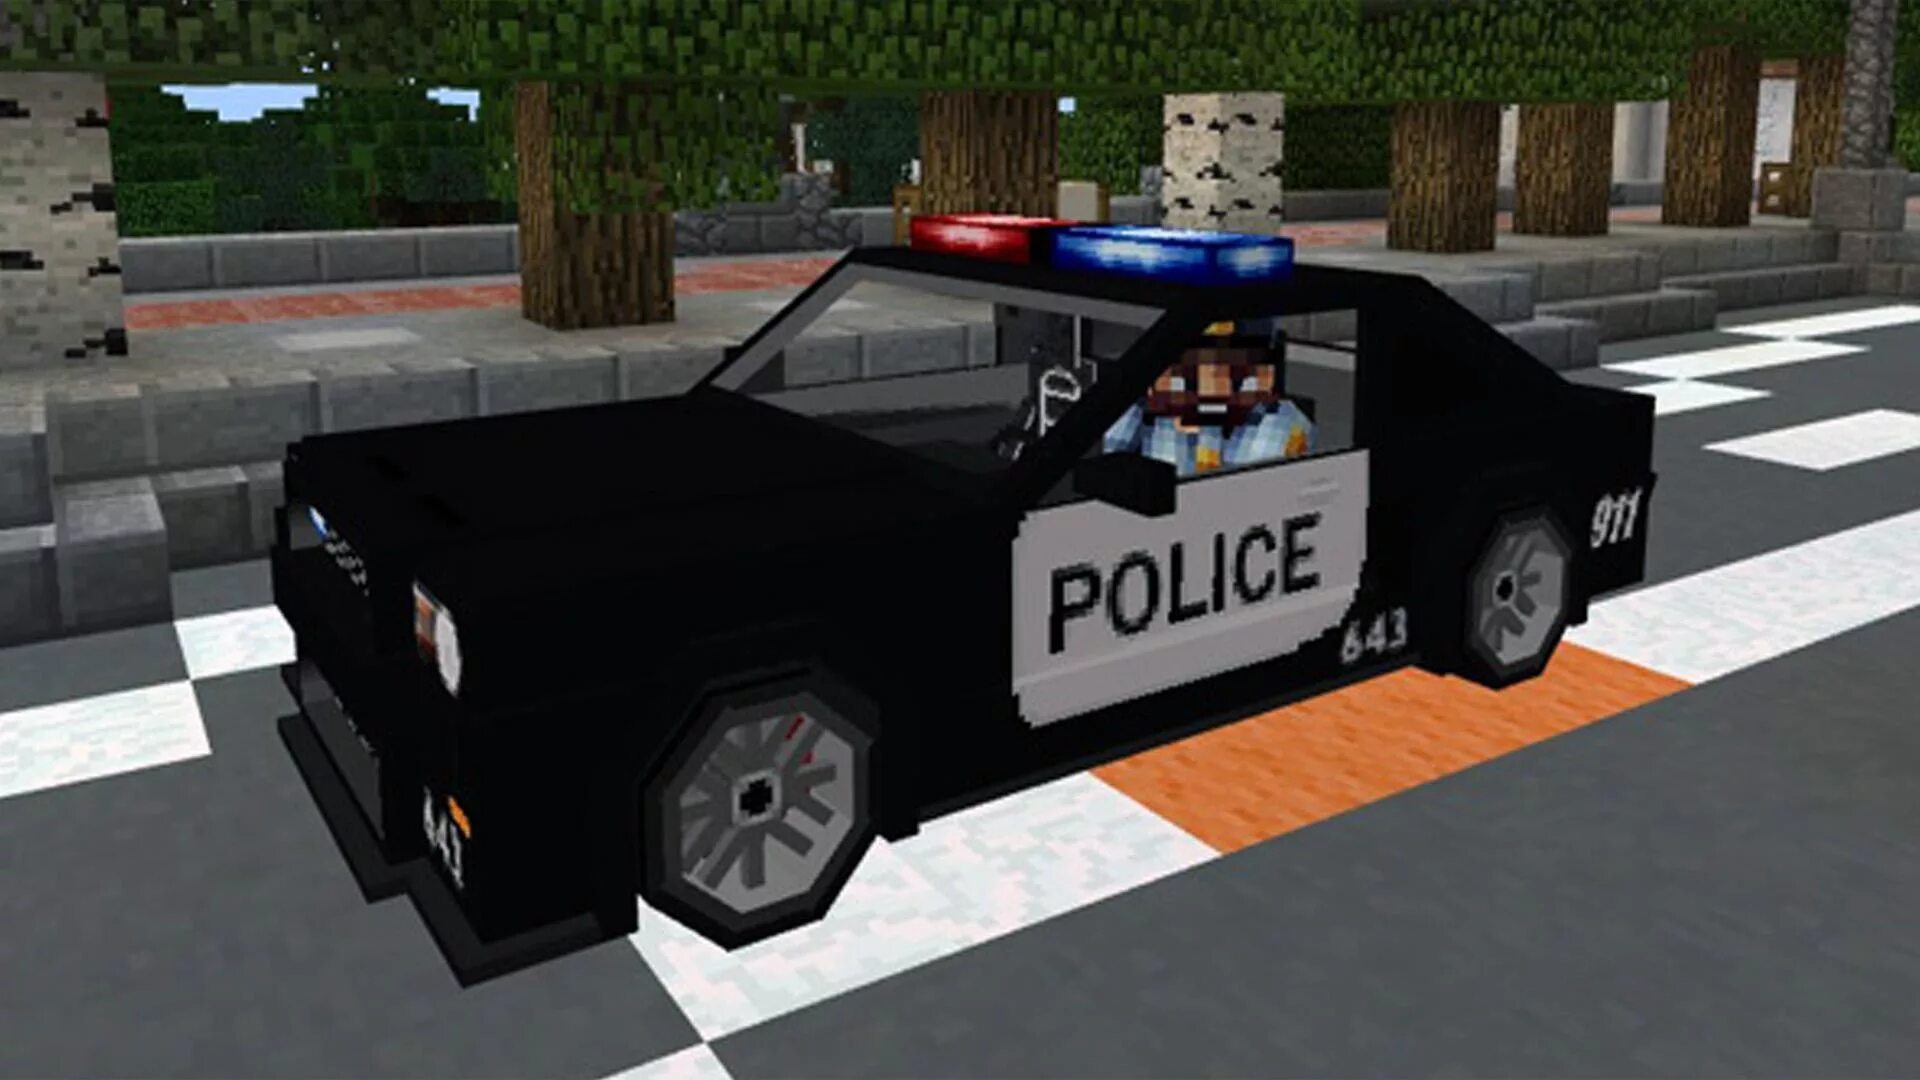 Мод на делать машины. Полицейская машина в МАЙНКРАФТЕ. Мод на полицейскую машину в МАЙНКРАФТЕ. Полицейская машина в МАЙНКРАФТА. Машина полиции майнкрафт.